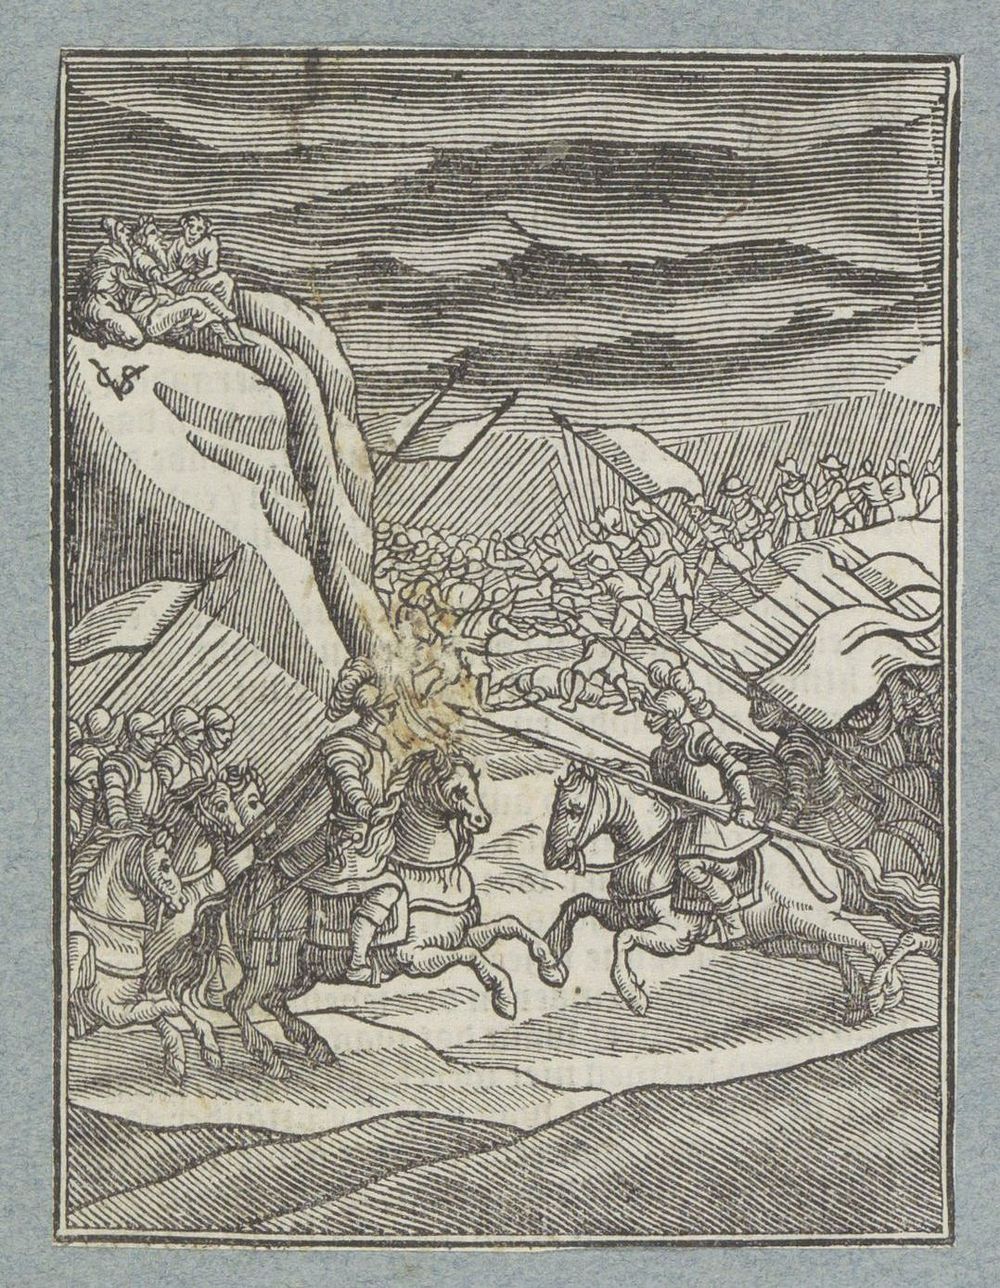 Oorlog met de Amalekieten (1645 - 1646) by Christoffel van Sichem II, Christoffel van Sichem III and Pieter Jacobsz Paets